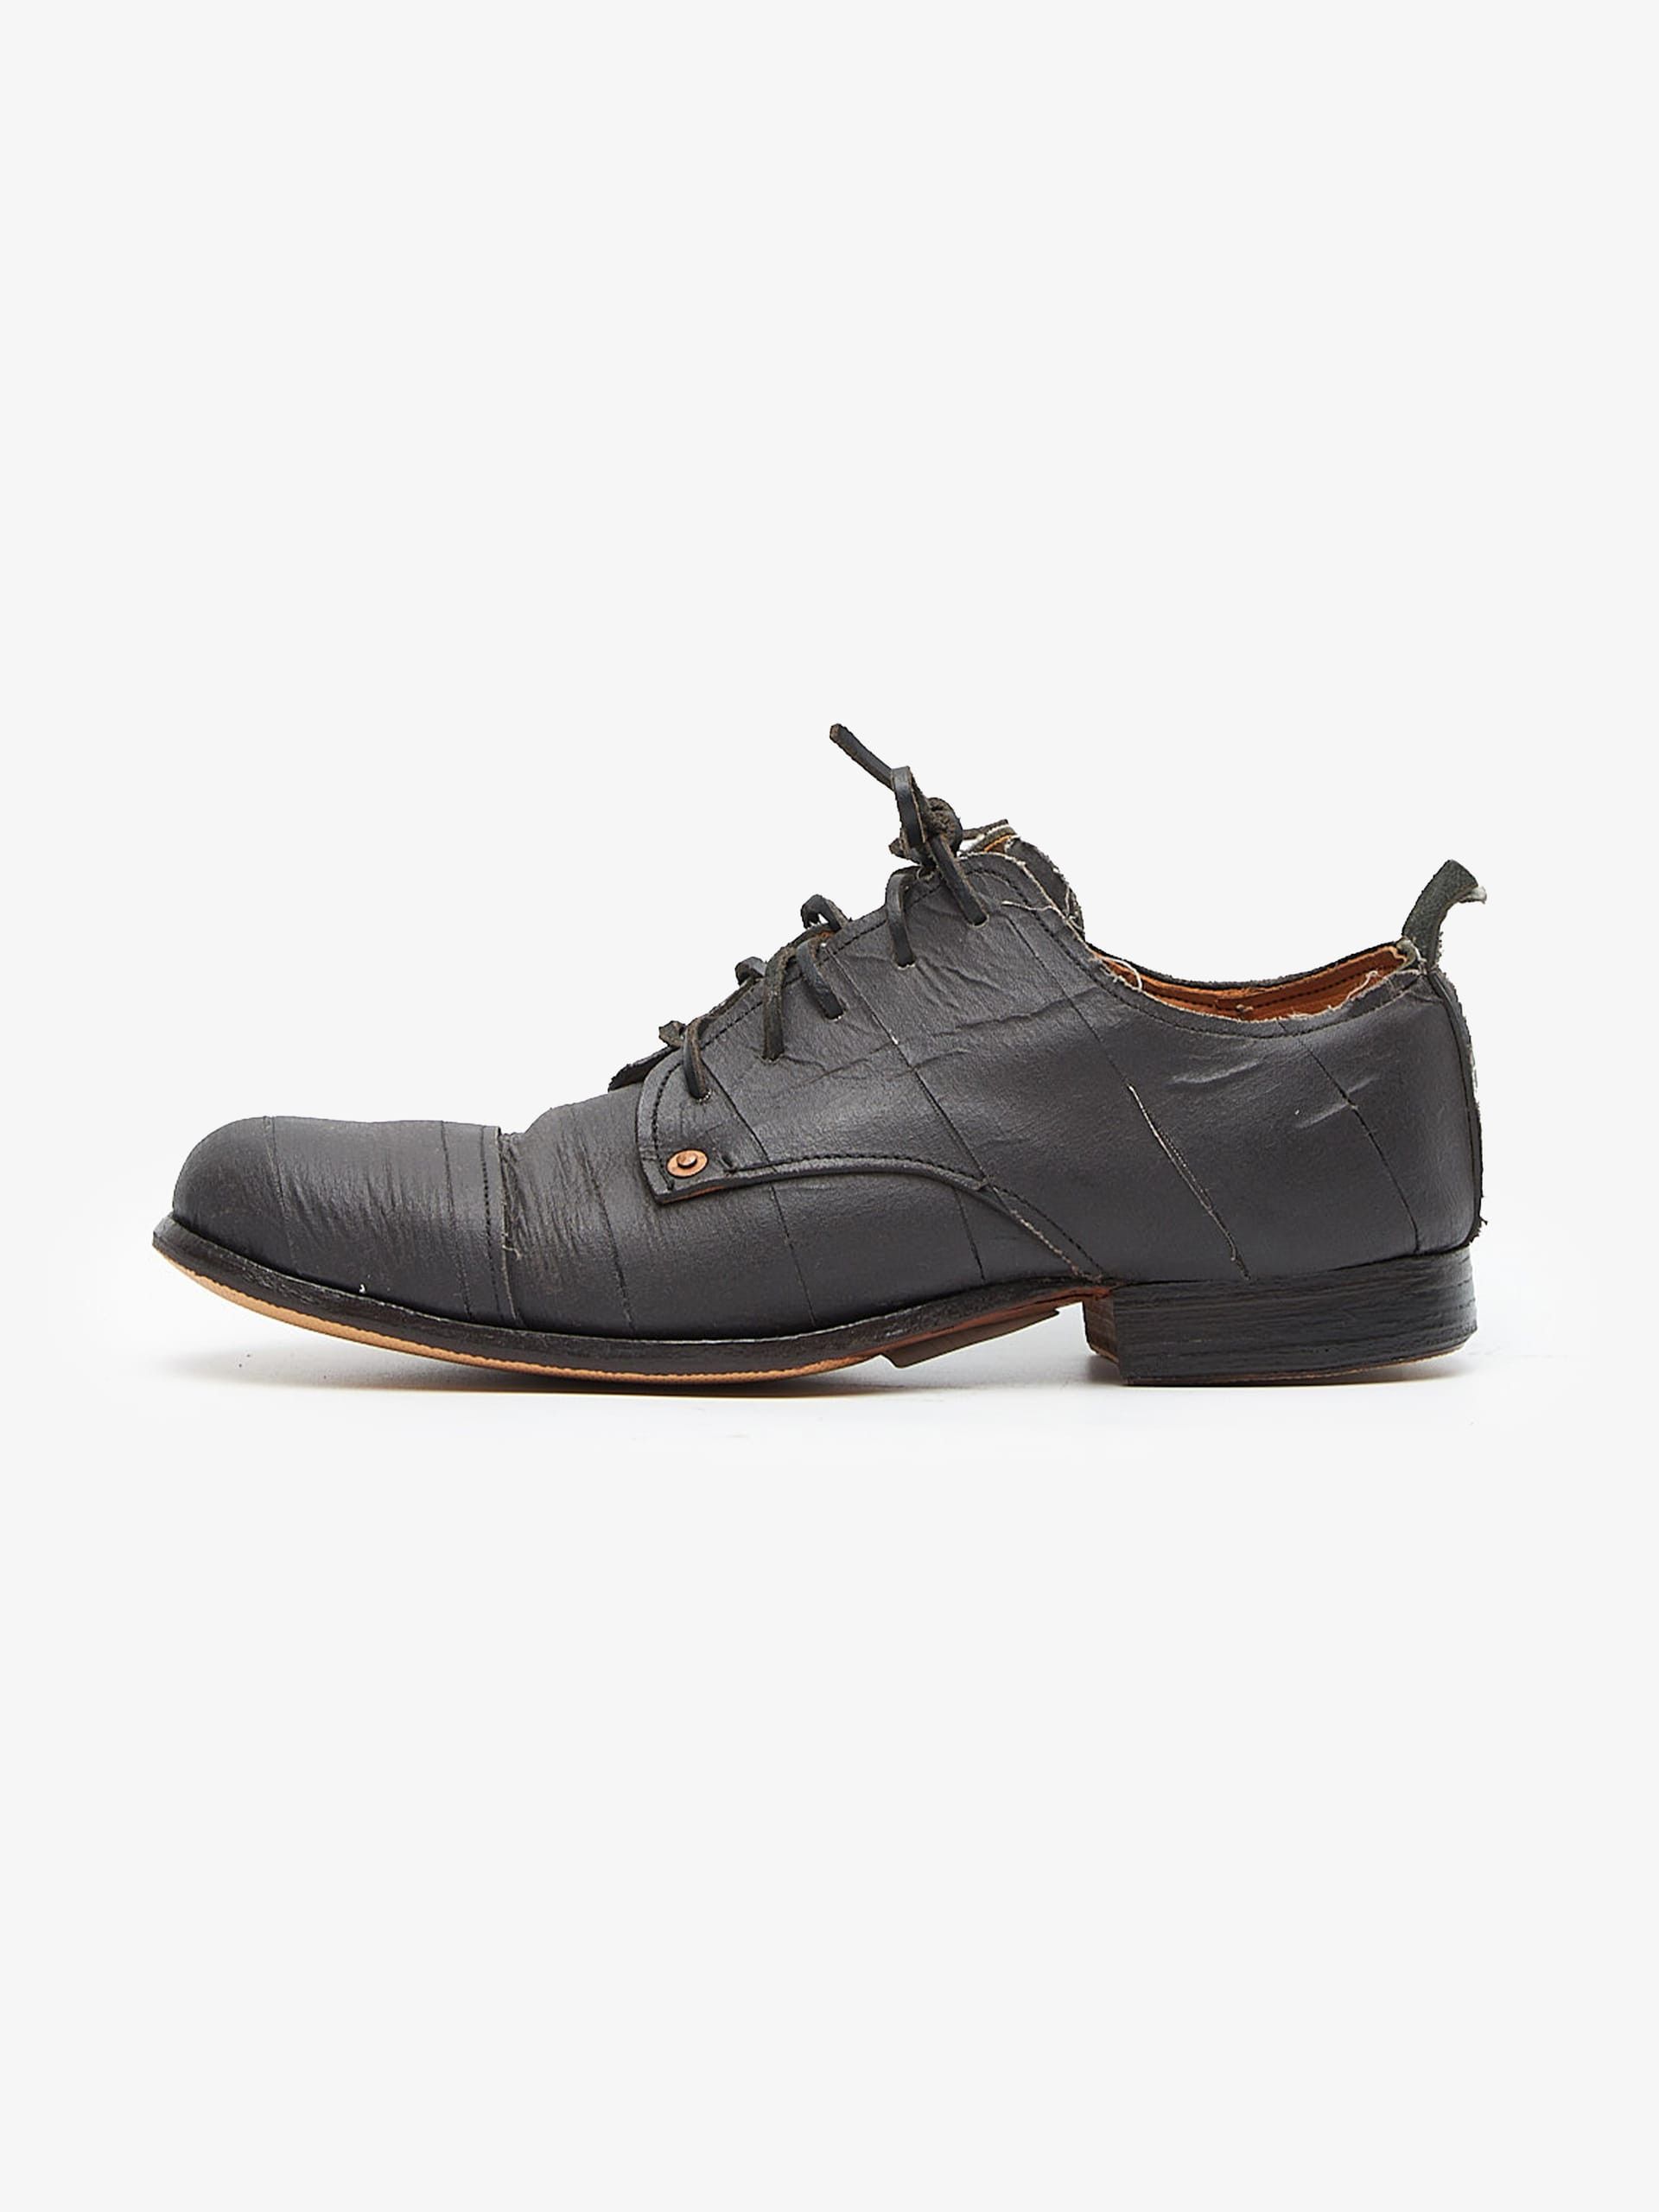 Paul Harnden Shoemakers Paul Harnden Boots | Grailed